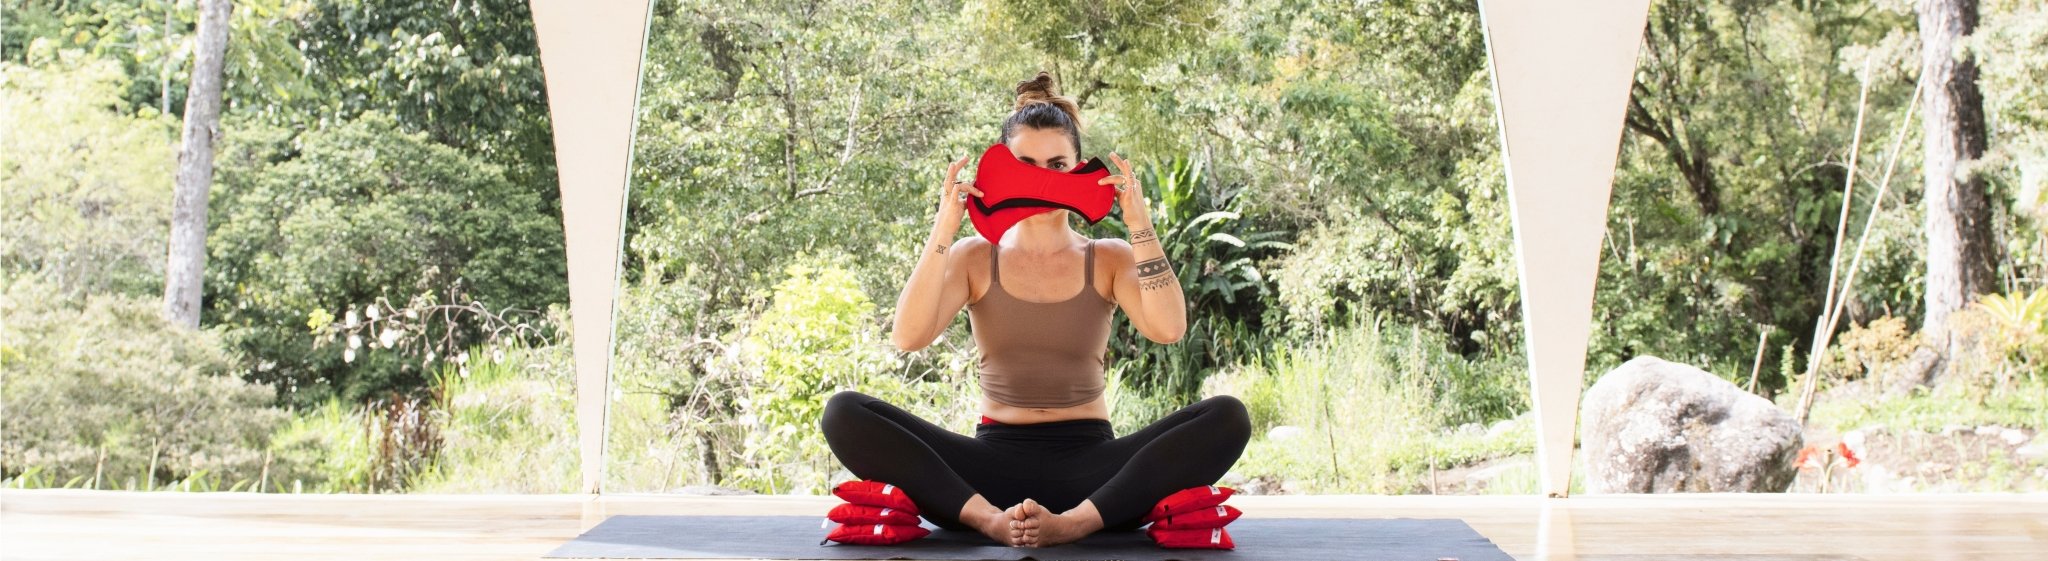 Femme qui fait du yoga en culotte menstruelle